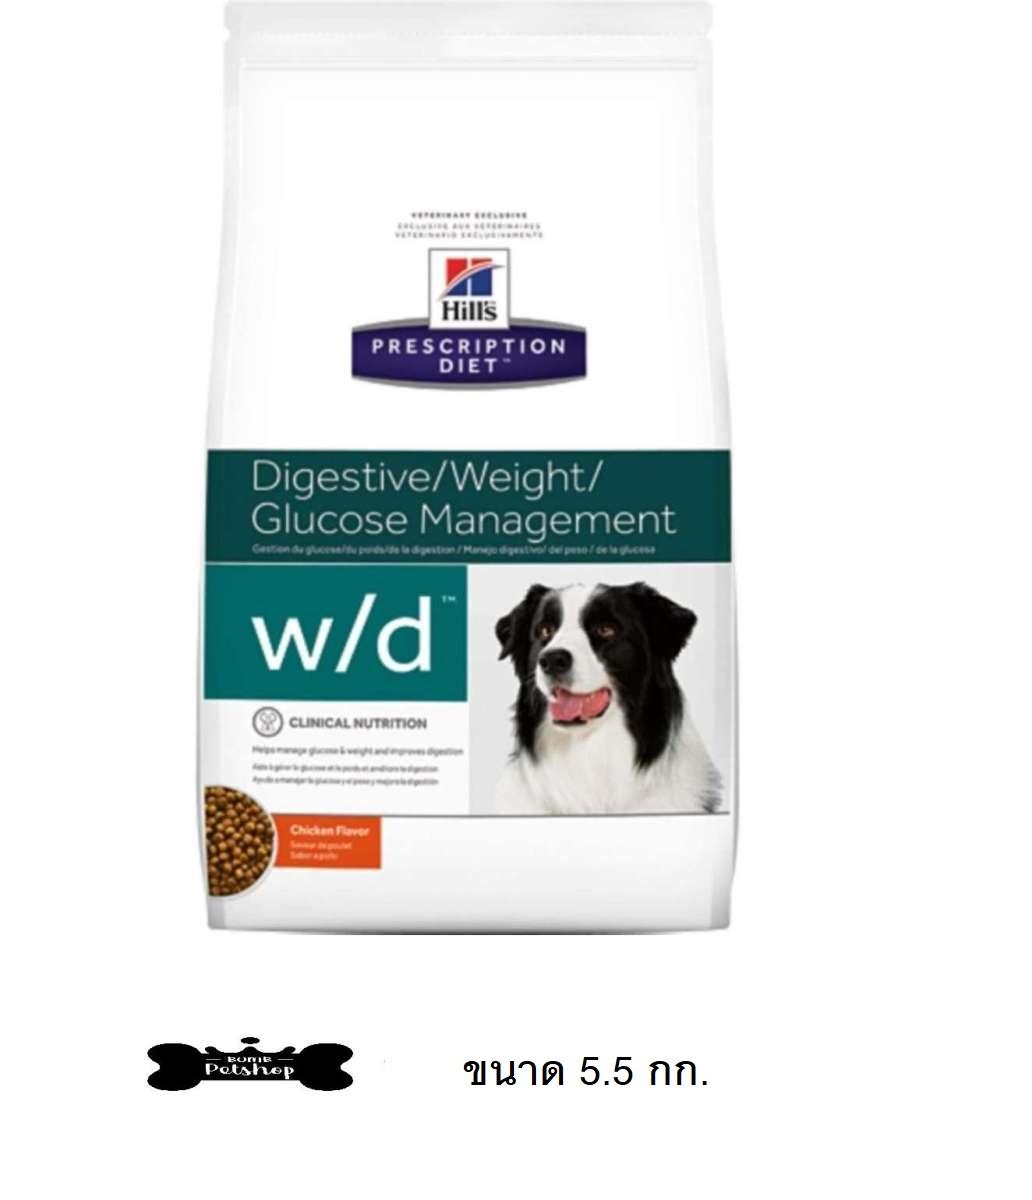 Hill's Canine w/d Dog Food อาหารสุนัข แบบเม็ด ช่วย รักษาน้ำหนักให้คงที่ ช่วยดูแลระบบทางเดินปัสสาวะให้มีสุขภาพดี ท้องผูก หรือเบาหวาน  ขนาด 5.5kg w/d